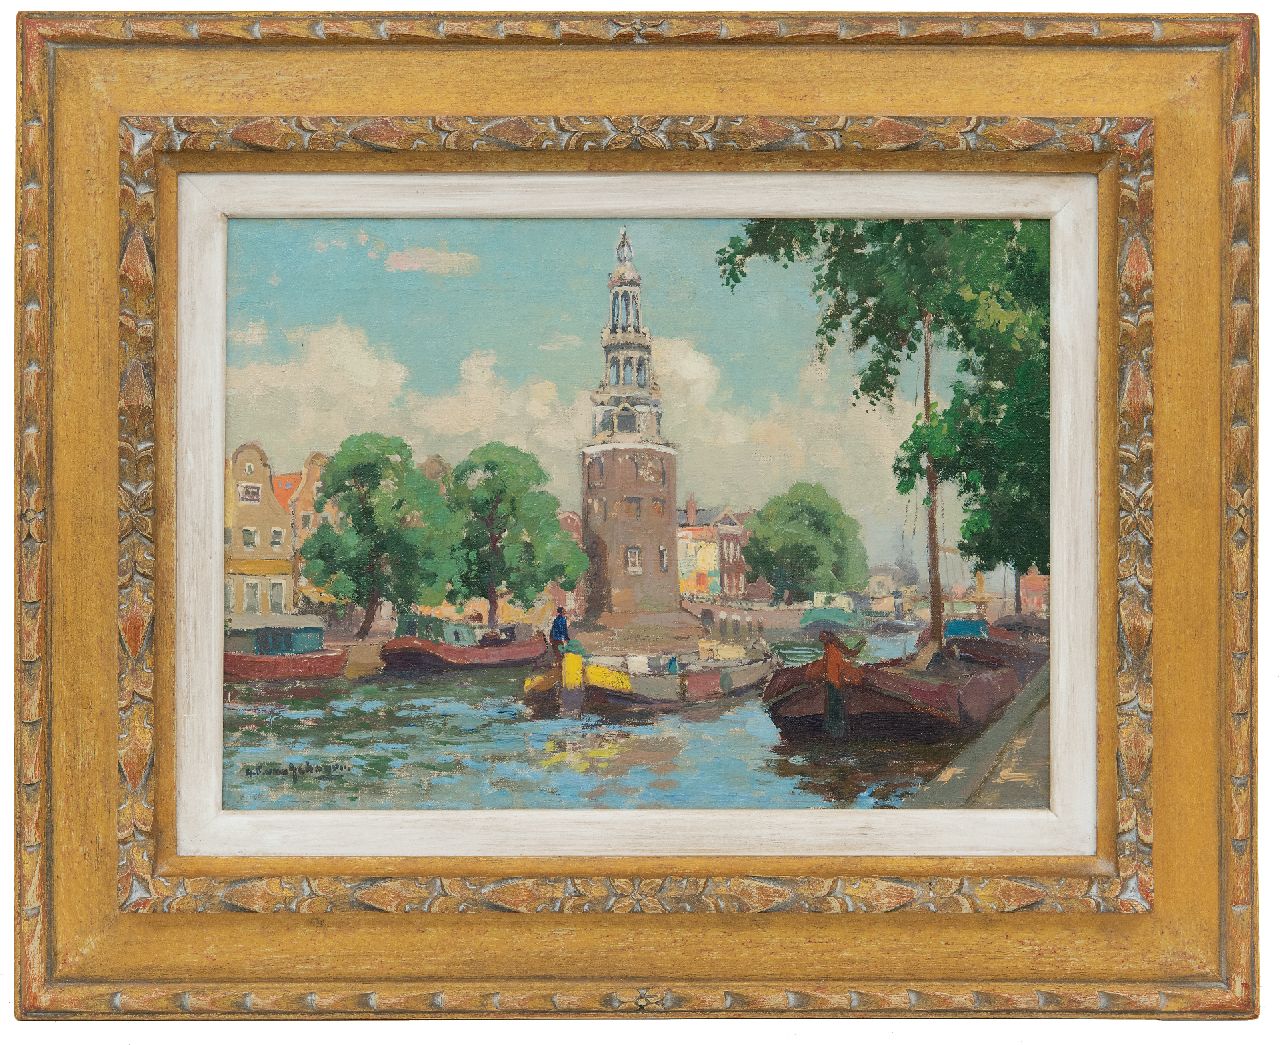 Schagen G.F. van | Gerbrand Frederik van Schagen, The Amste with the Montelbaanstoren, Amsterdam, oil on canvas 25.3 x 35.4 cm, signed l.l.